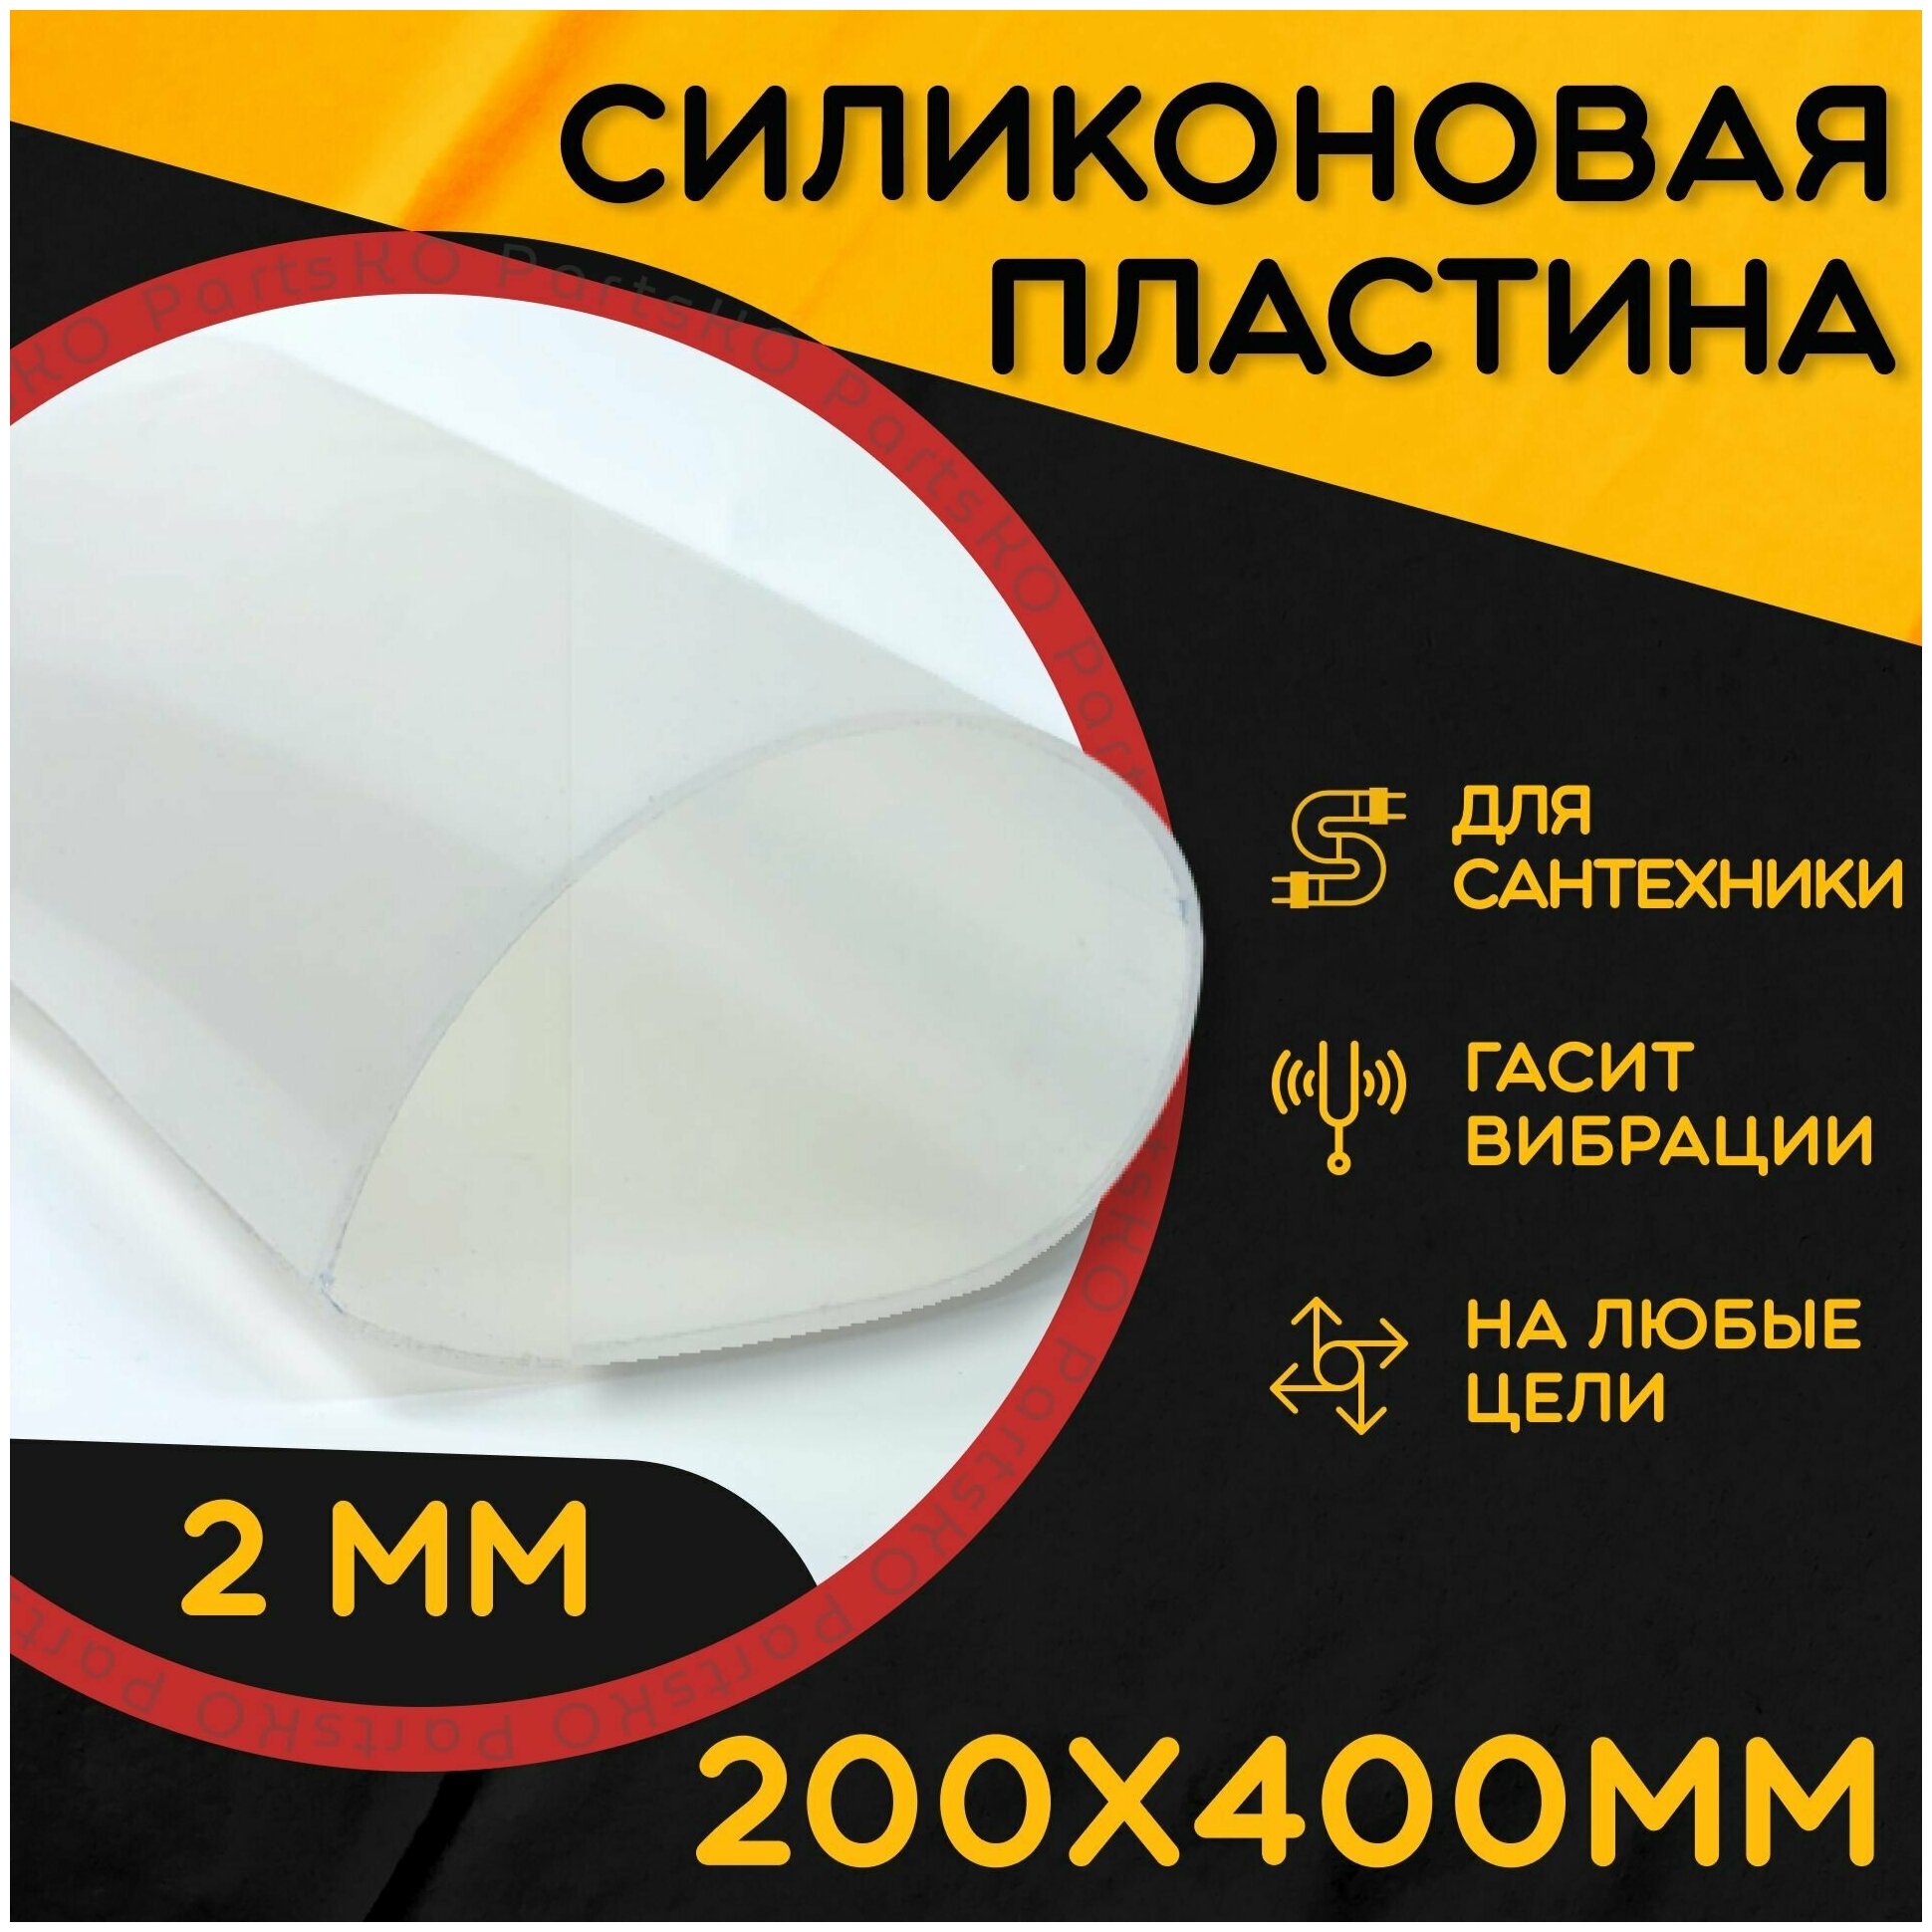 Силиконовая резина термостойкая. Толщина 2 мм. Размер 200х400 мм / Уплотнительная прокладка / Силиконовая пластина белого цвета.